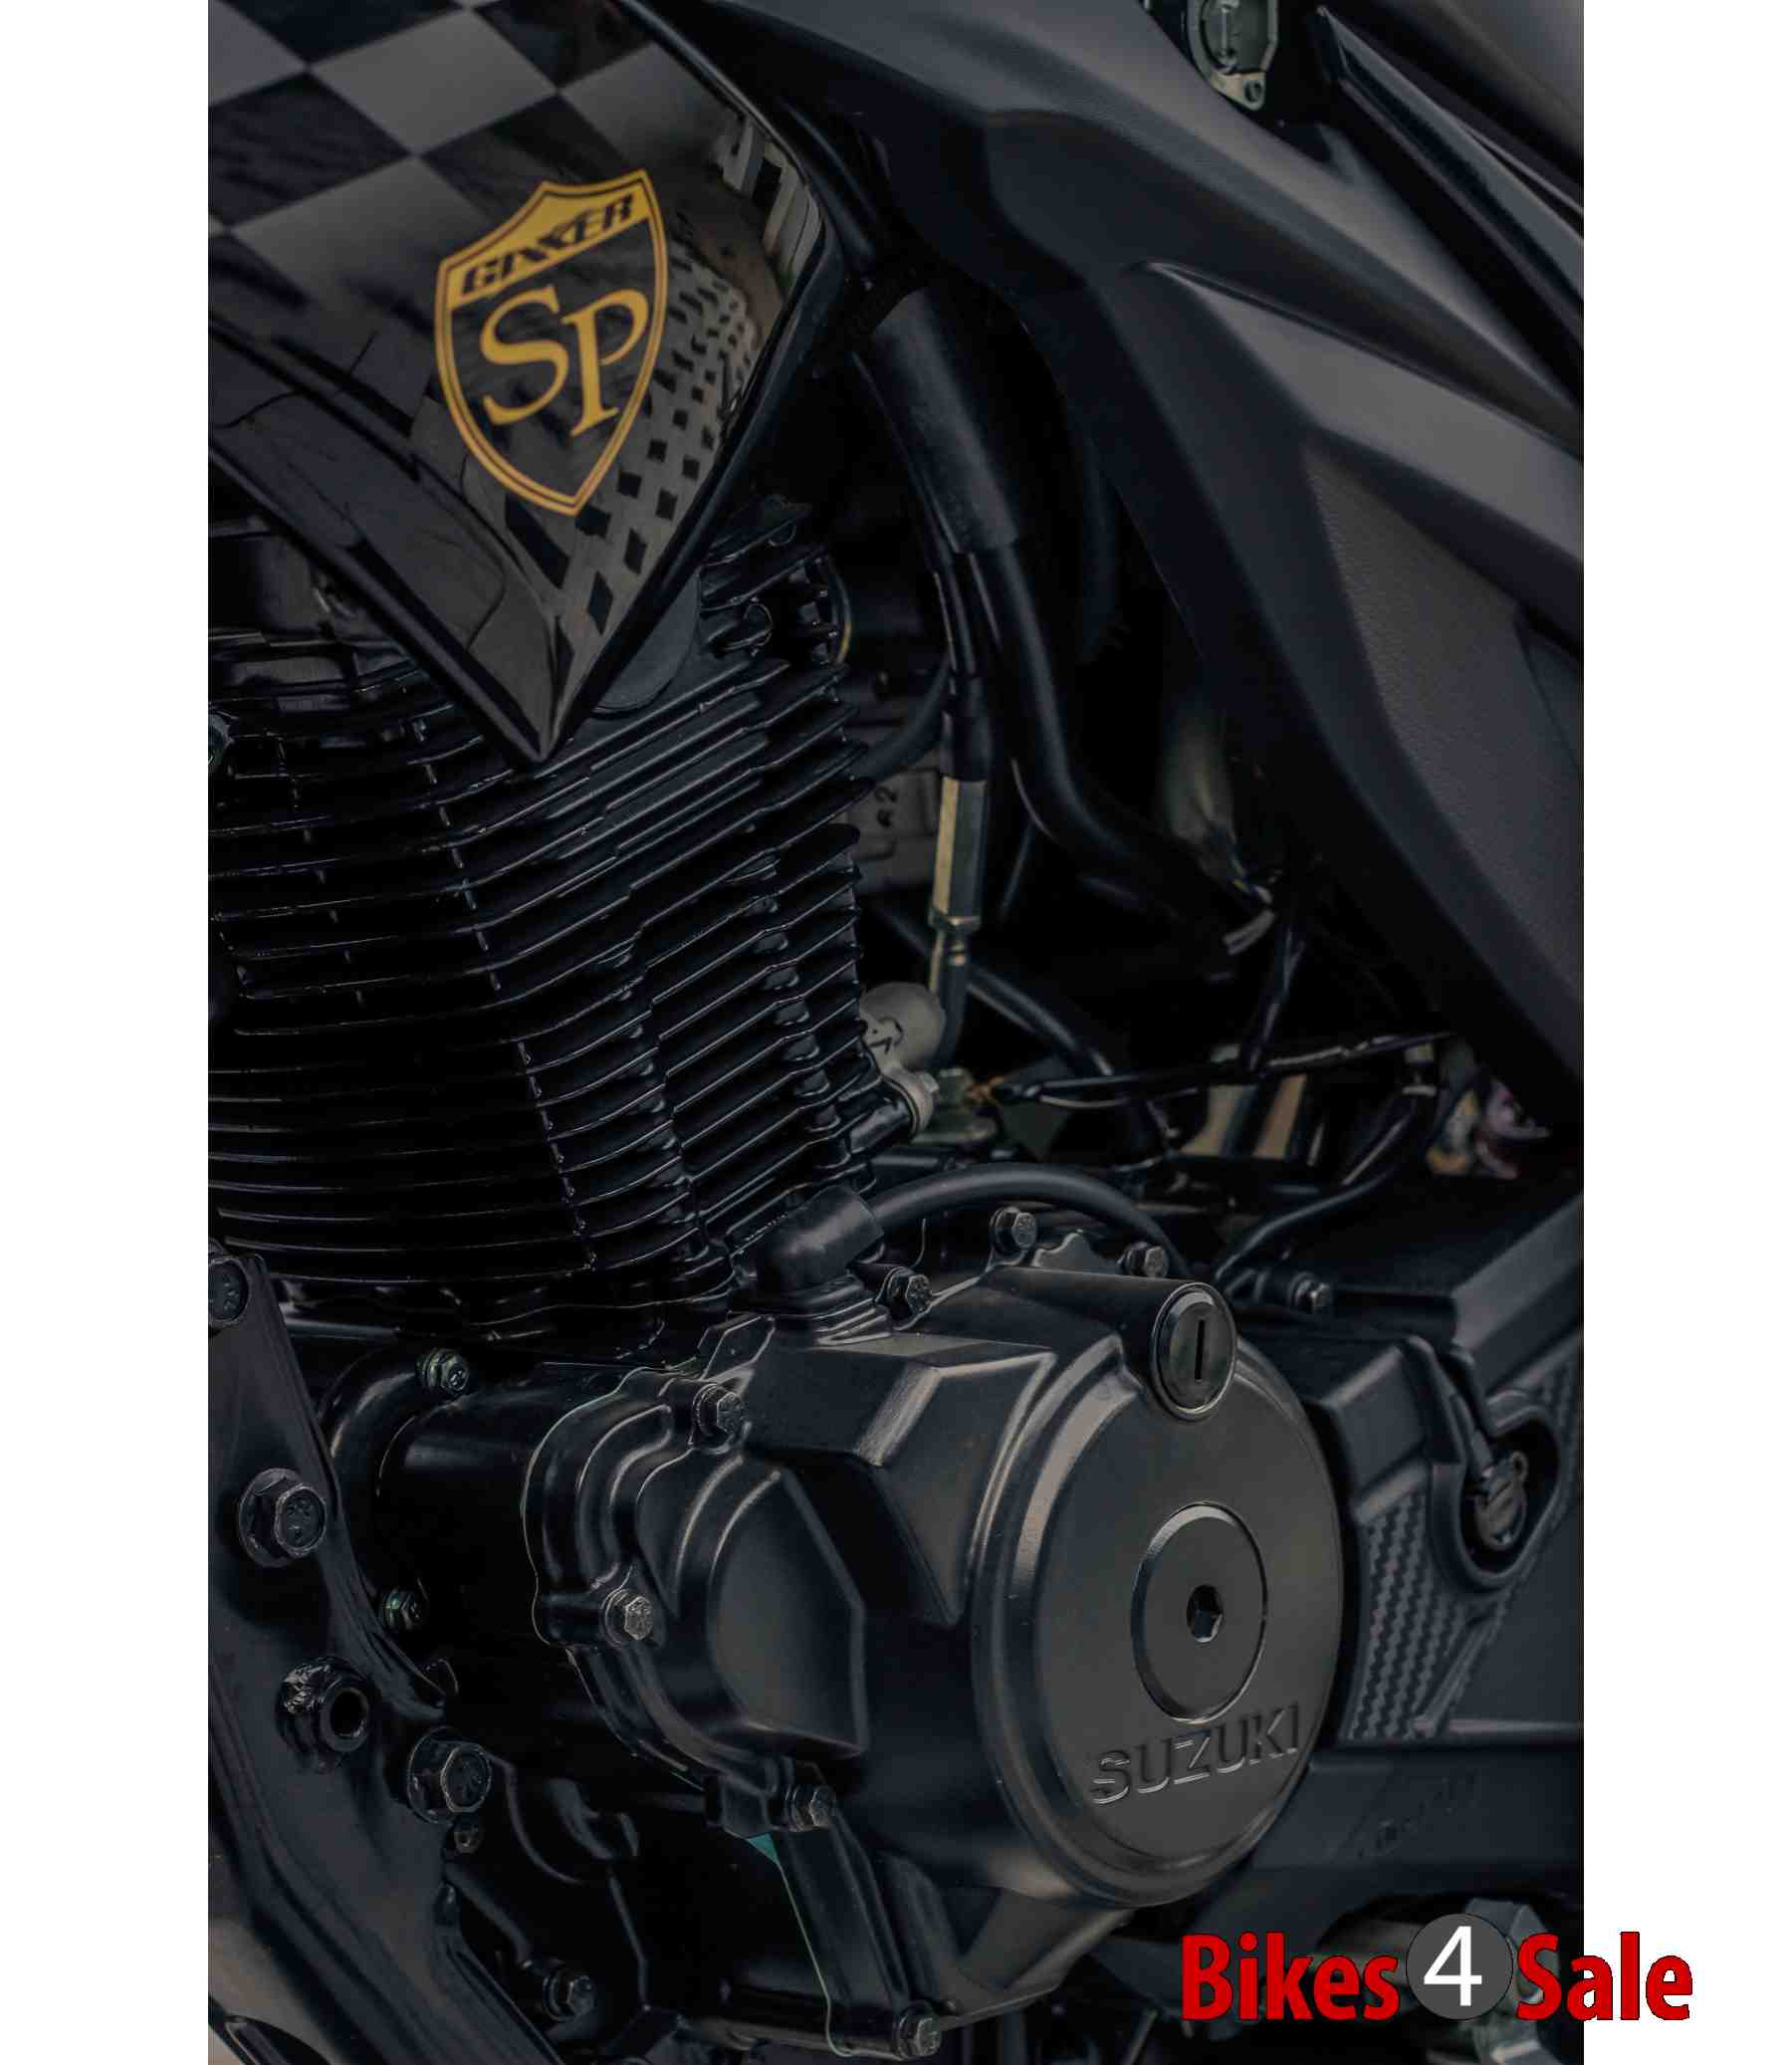 Suzuki Gixxer SP - Matte Black Powder Coated Engine